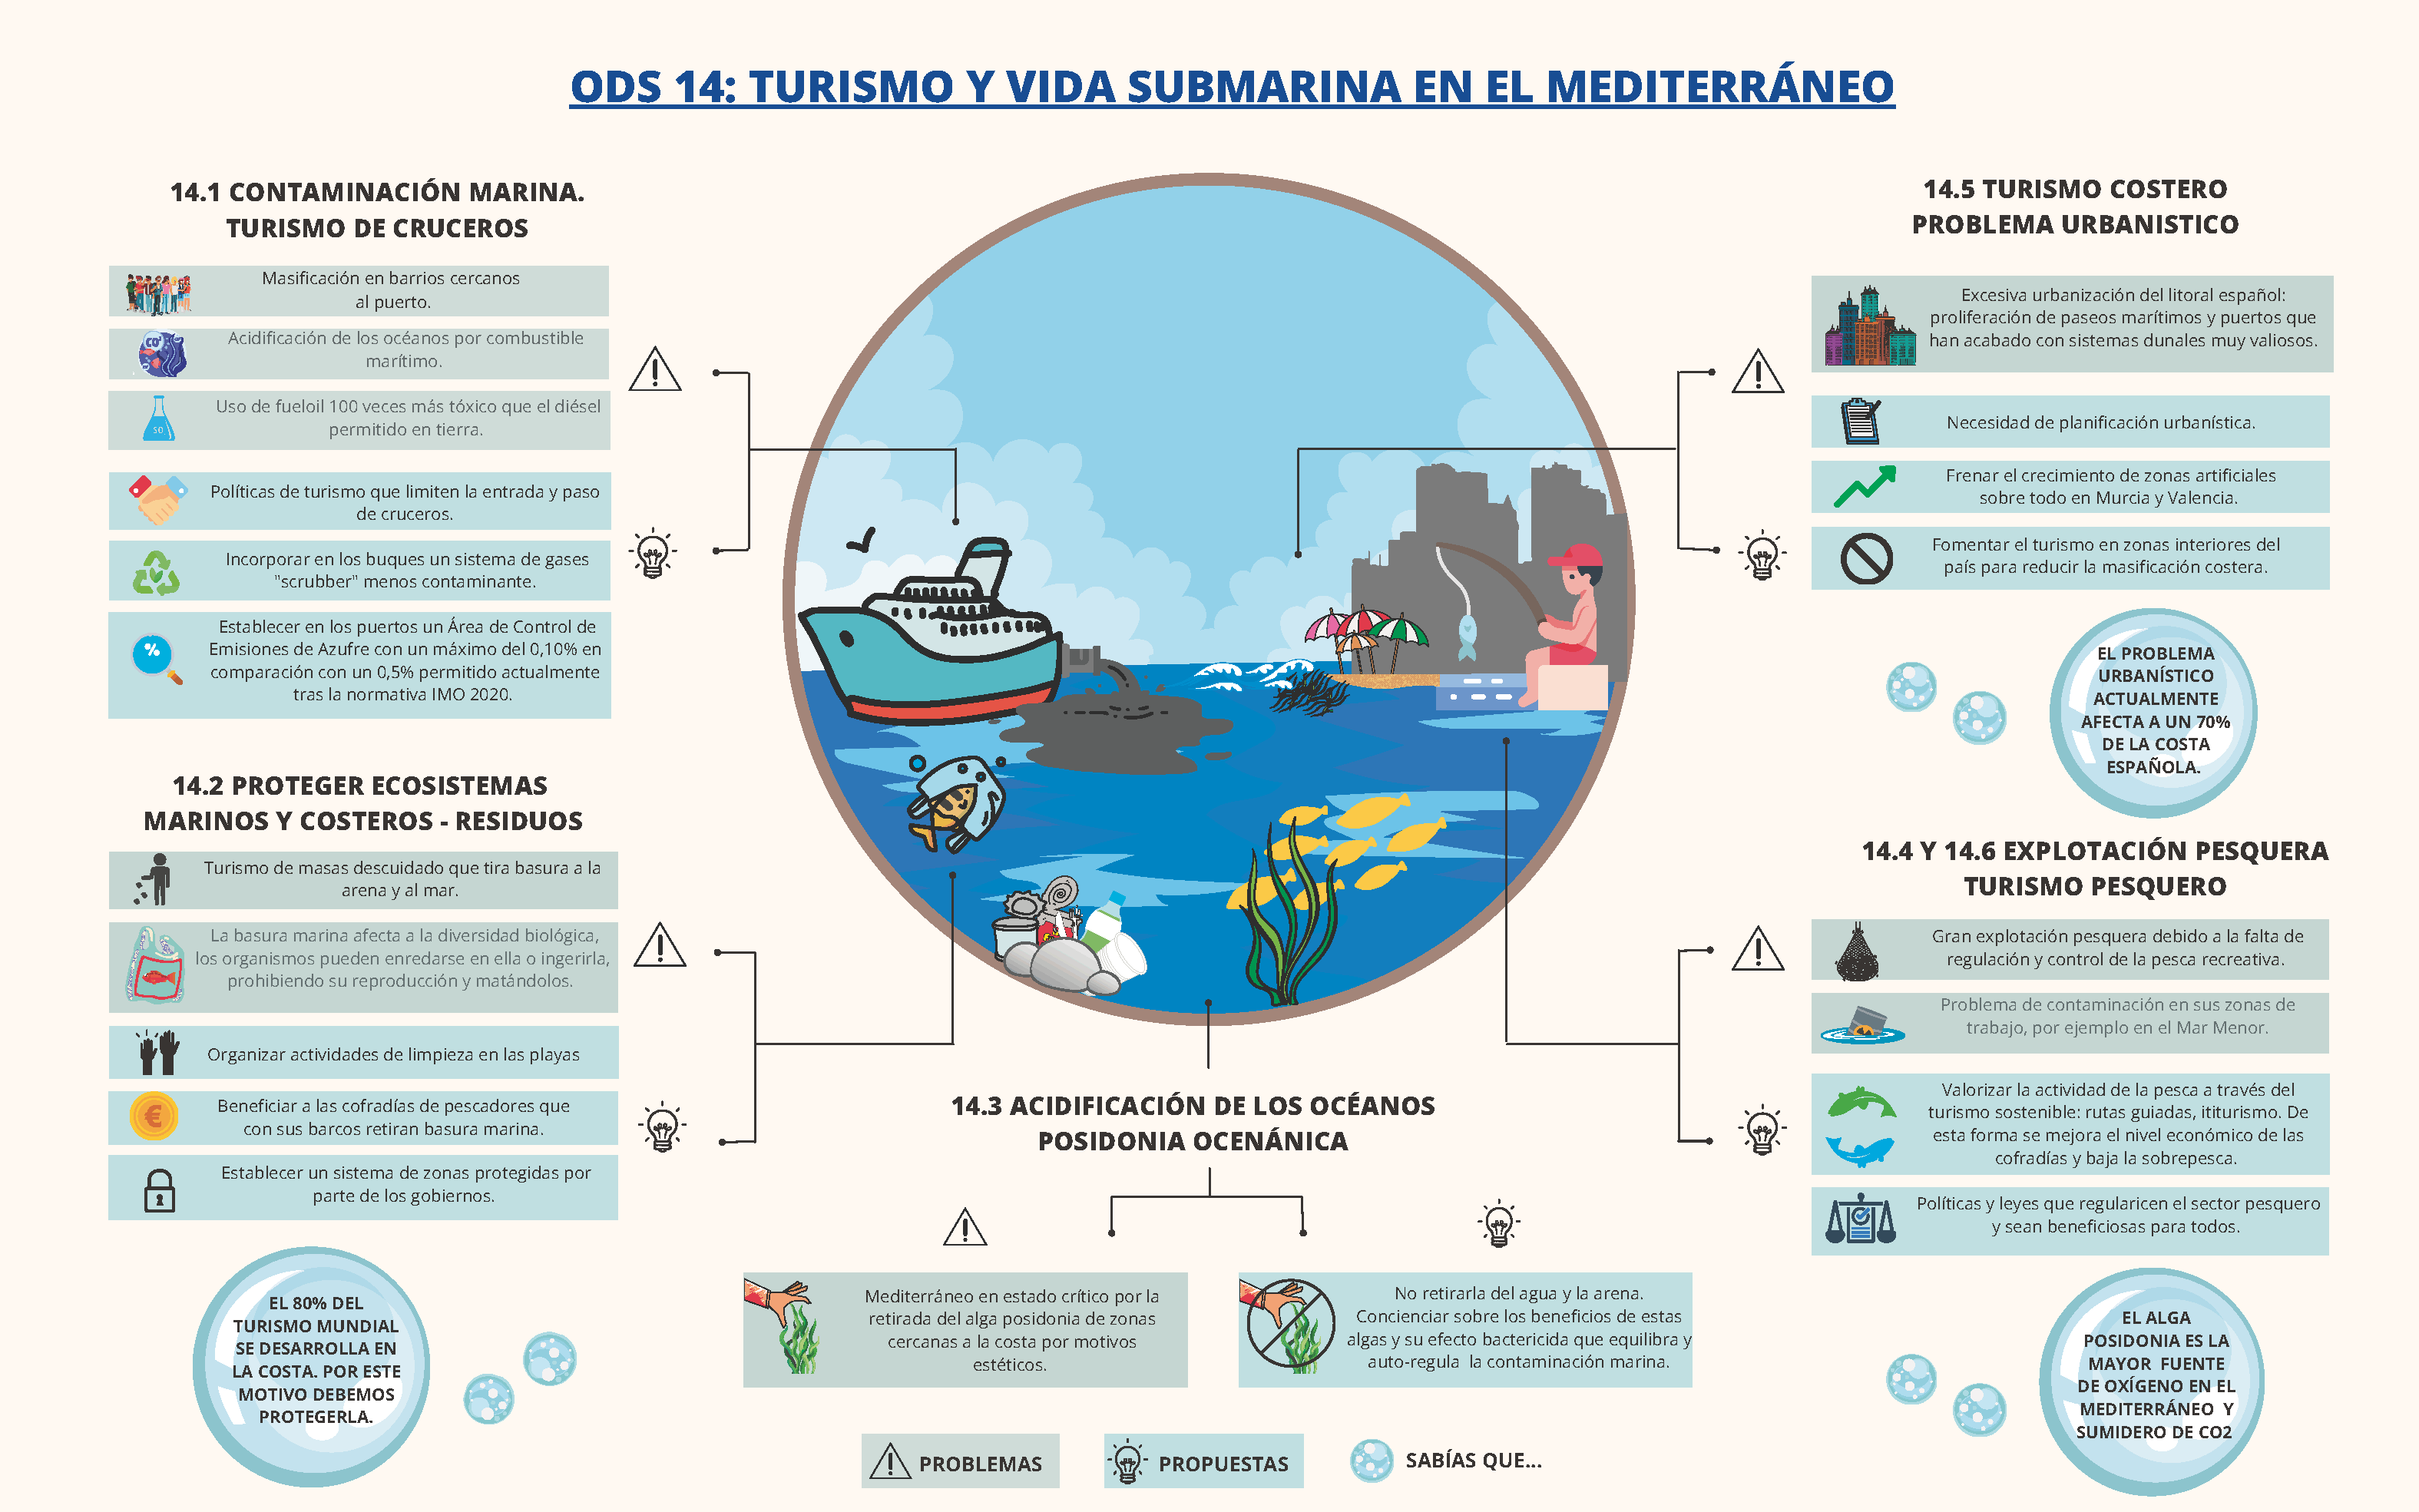 ODS 14. Turismo y vida submarina en el Mediterráneo